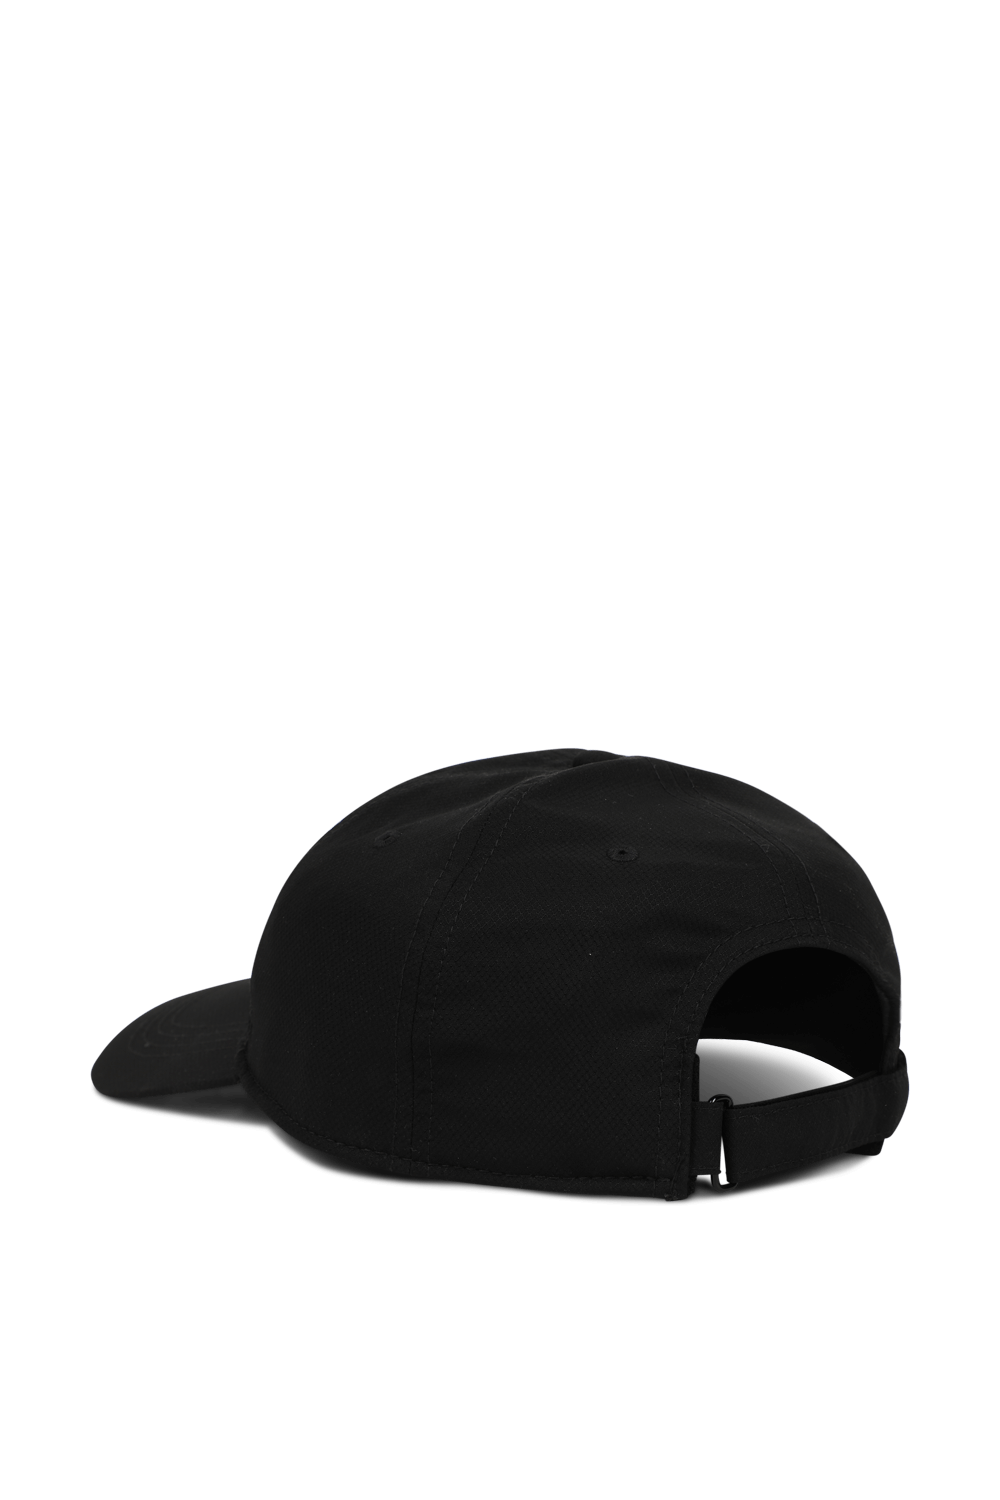 כובע בייסבול שחור עם לוגו תנין LACOSTE